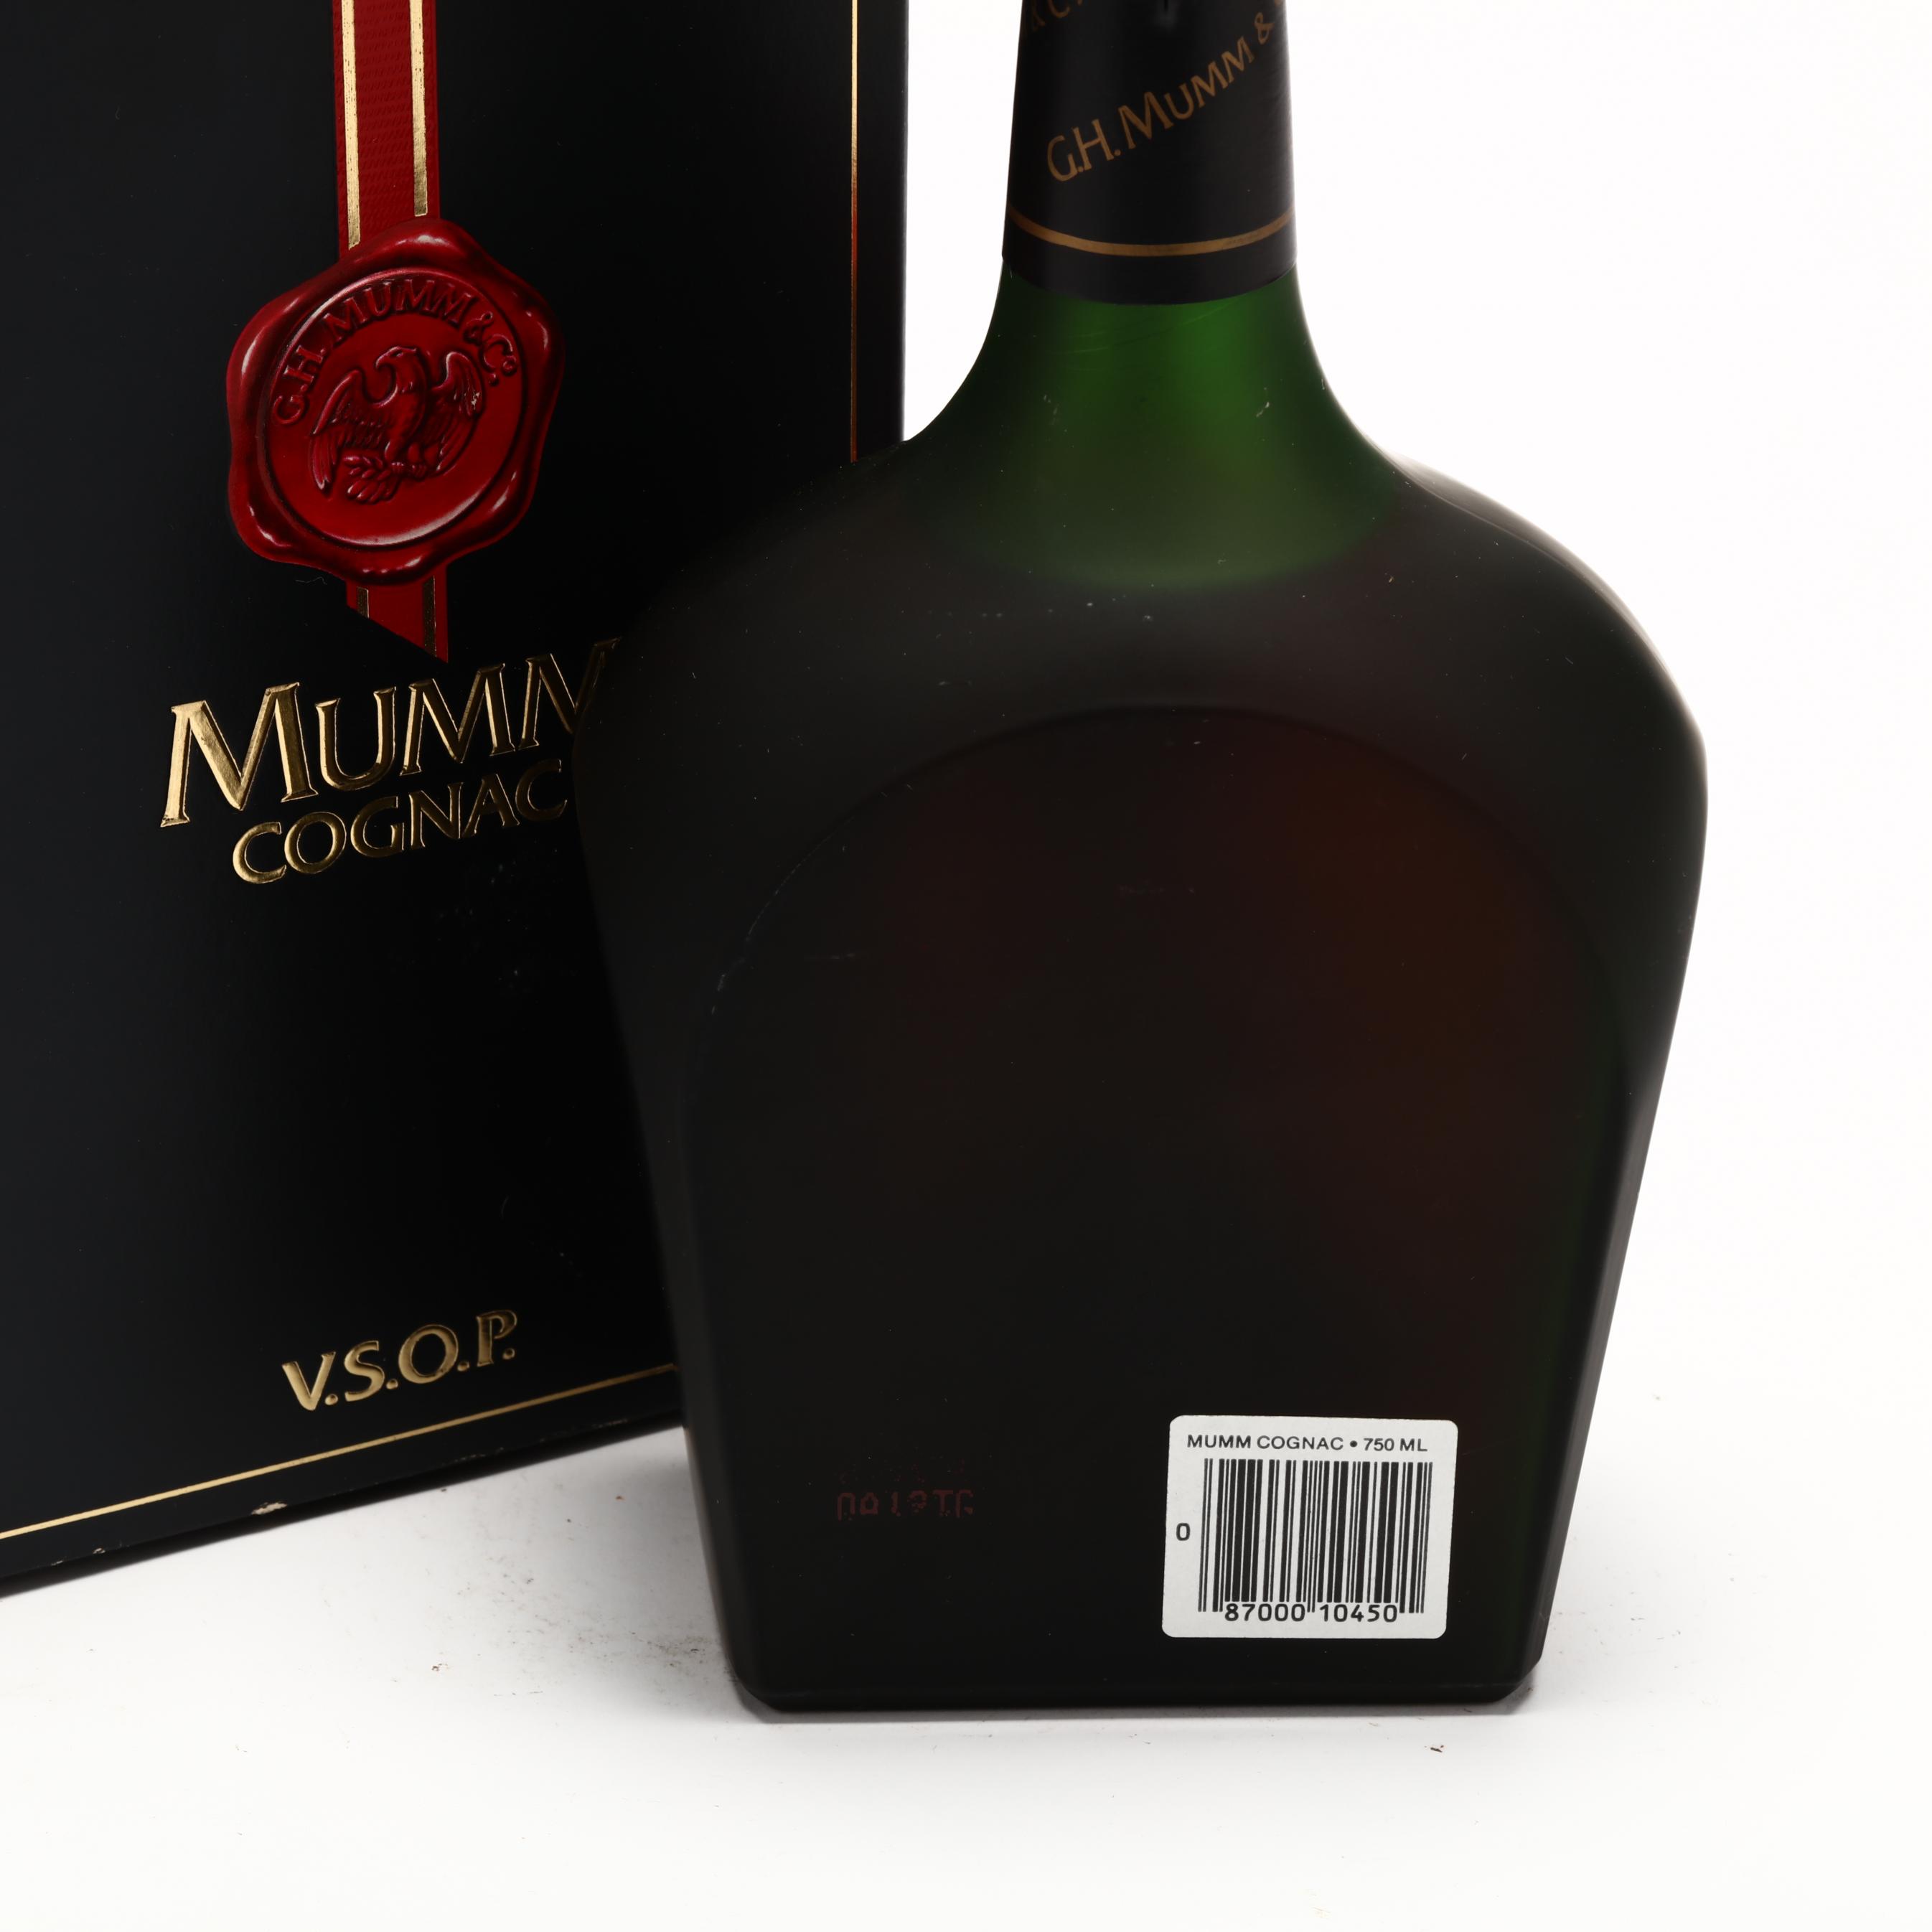 Mumm V.S.O.P. Cognac (Lot 3016 - Rare SpiritsMar 11, 2022, 12:00pm)